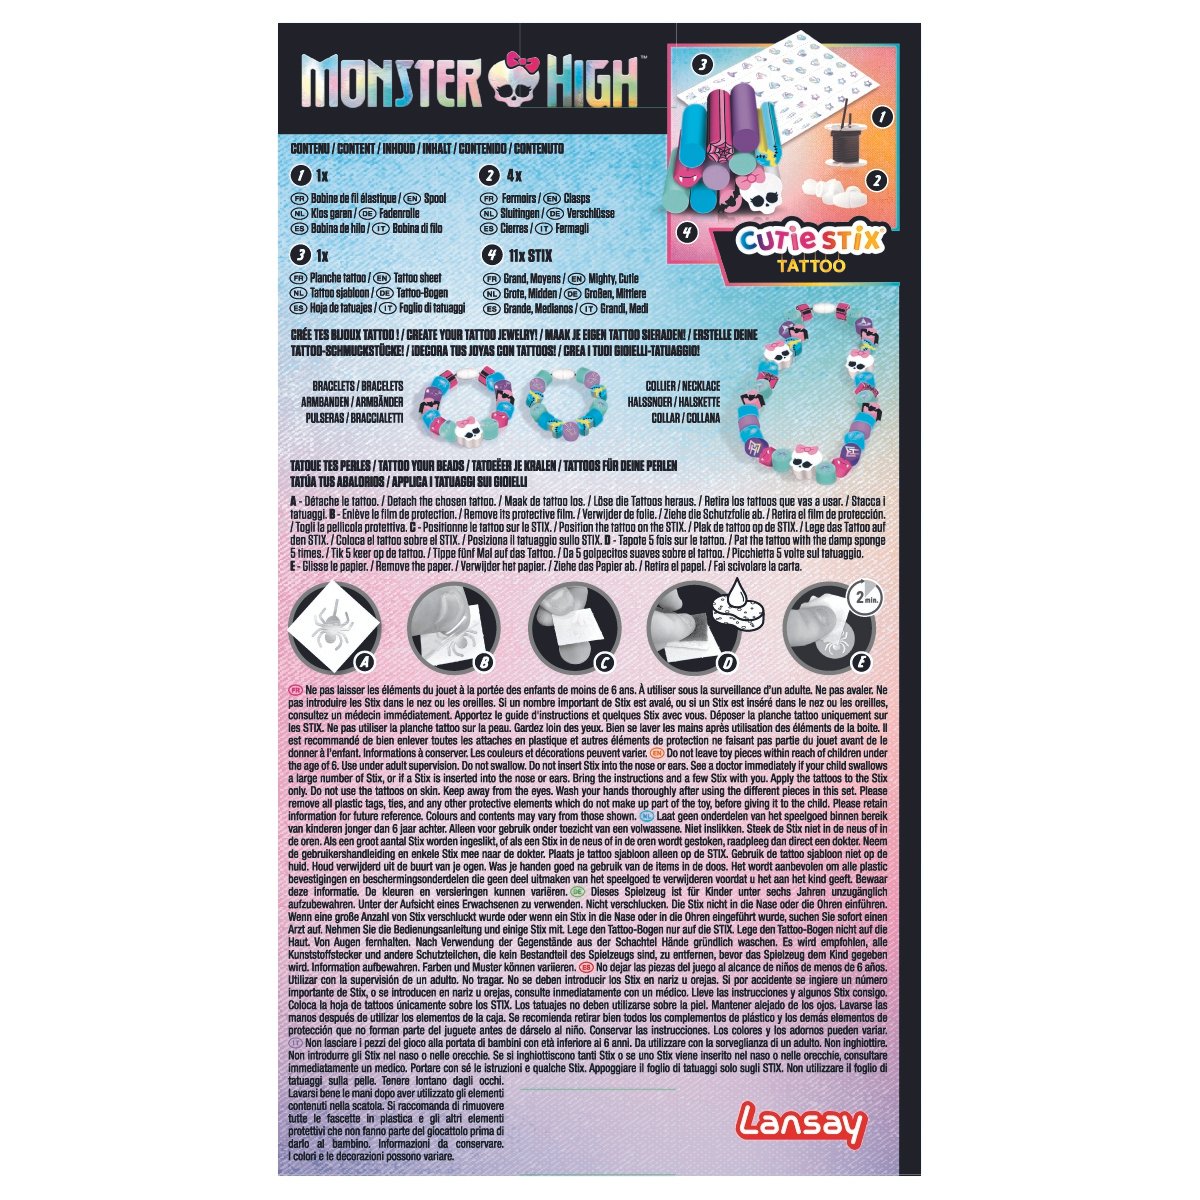 Cutie Stix recharge Monster High - La Grande Récré